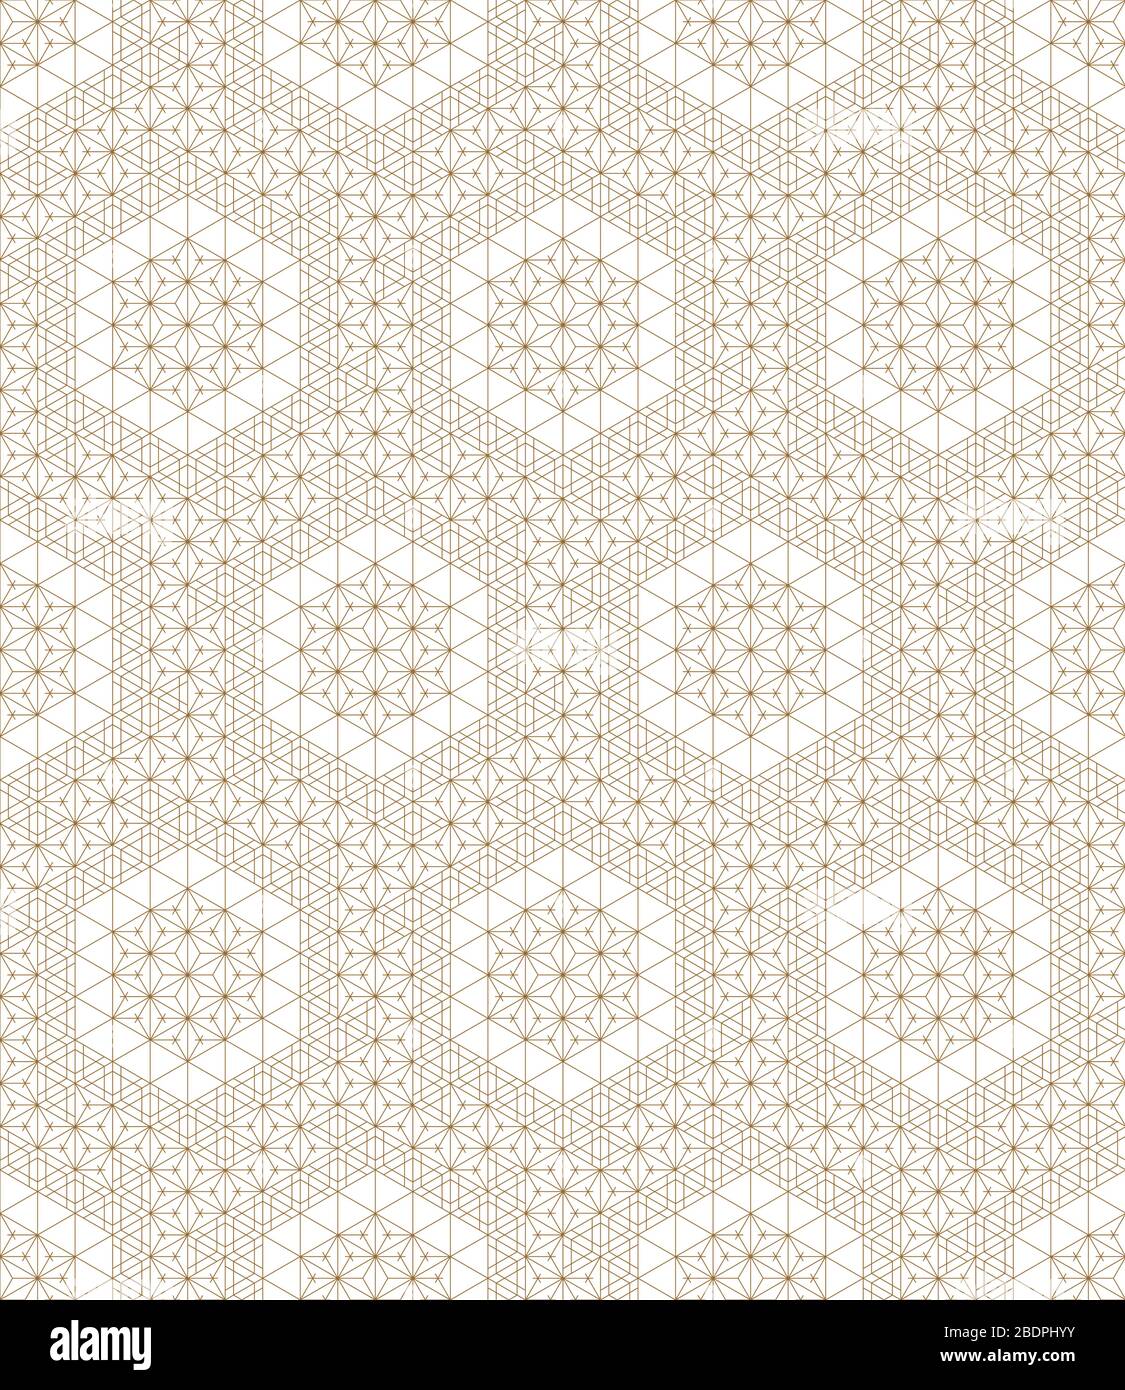 Motif géométrique transparente .sur la base des éléments de style japonais Kumiko.Gold lignes.Pour modèle, du textile, du papier d'emballage,tissu,la découpe au laser et fra Illustration de Vecteur